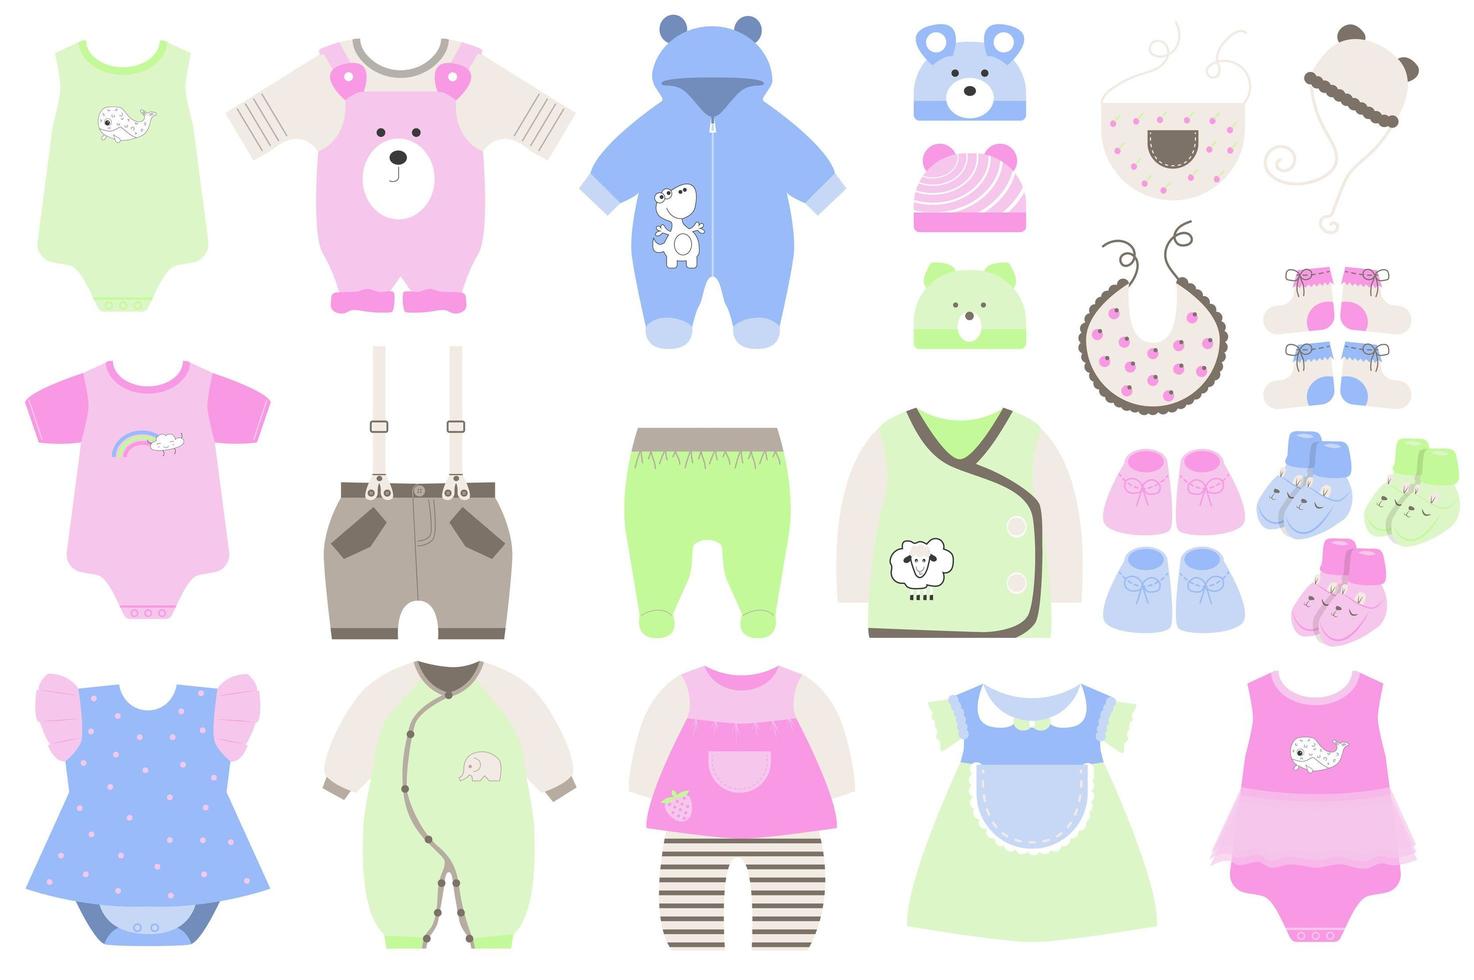 söta babykläder och skor i platt tecknad design. barns garderob för spädbarn pojke och flicka. bodys, klänningar, byxor, skjortor, byxor, hattar och andra isolerade element. vektor illustration